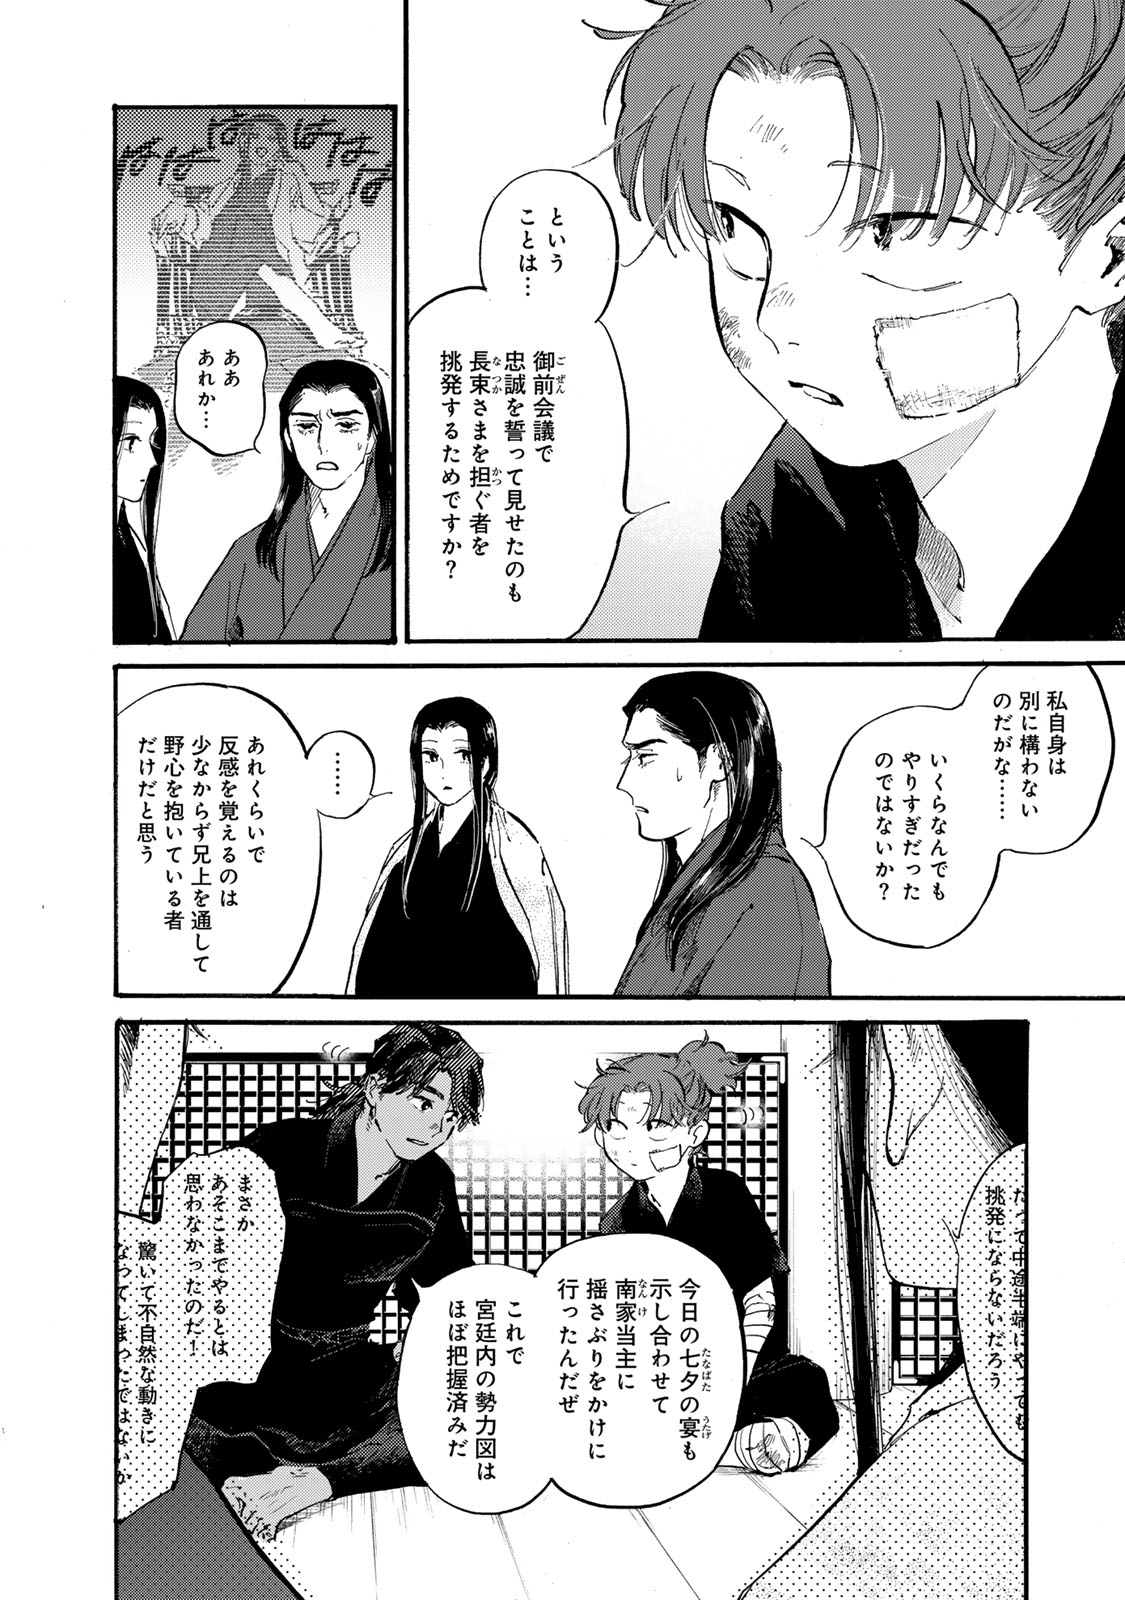 Karasu wa Aruji wo Erabanai - Chapter 43 - Page 10